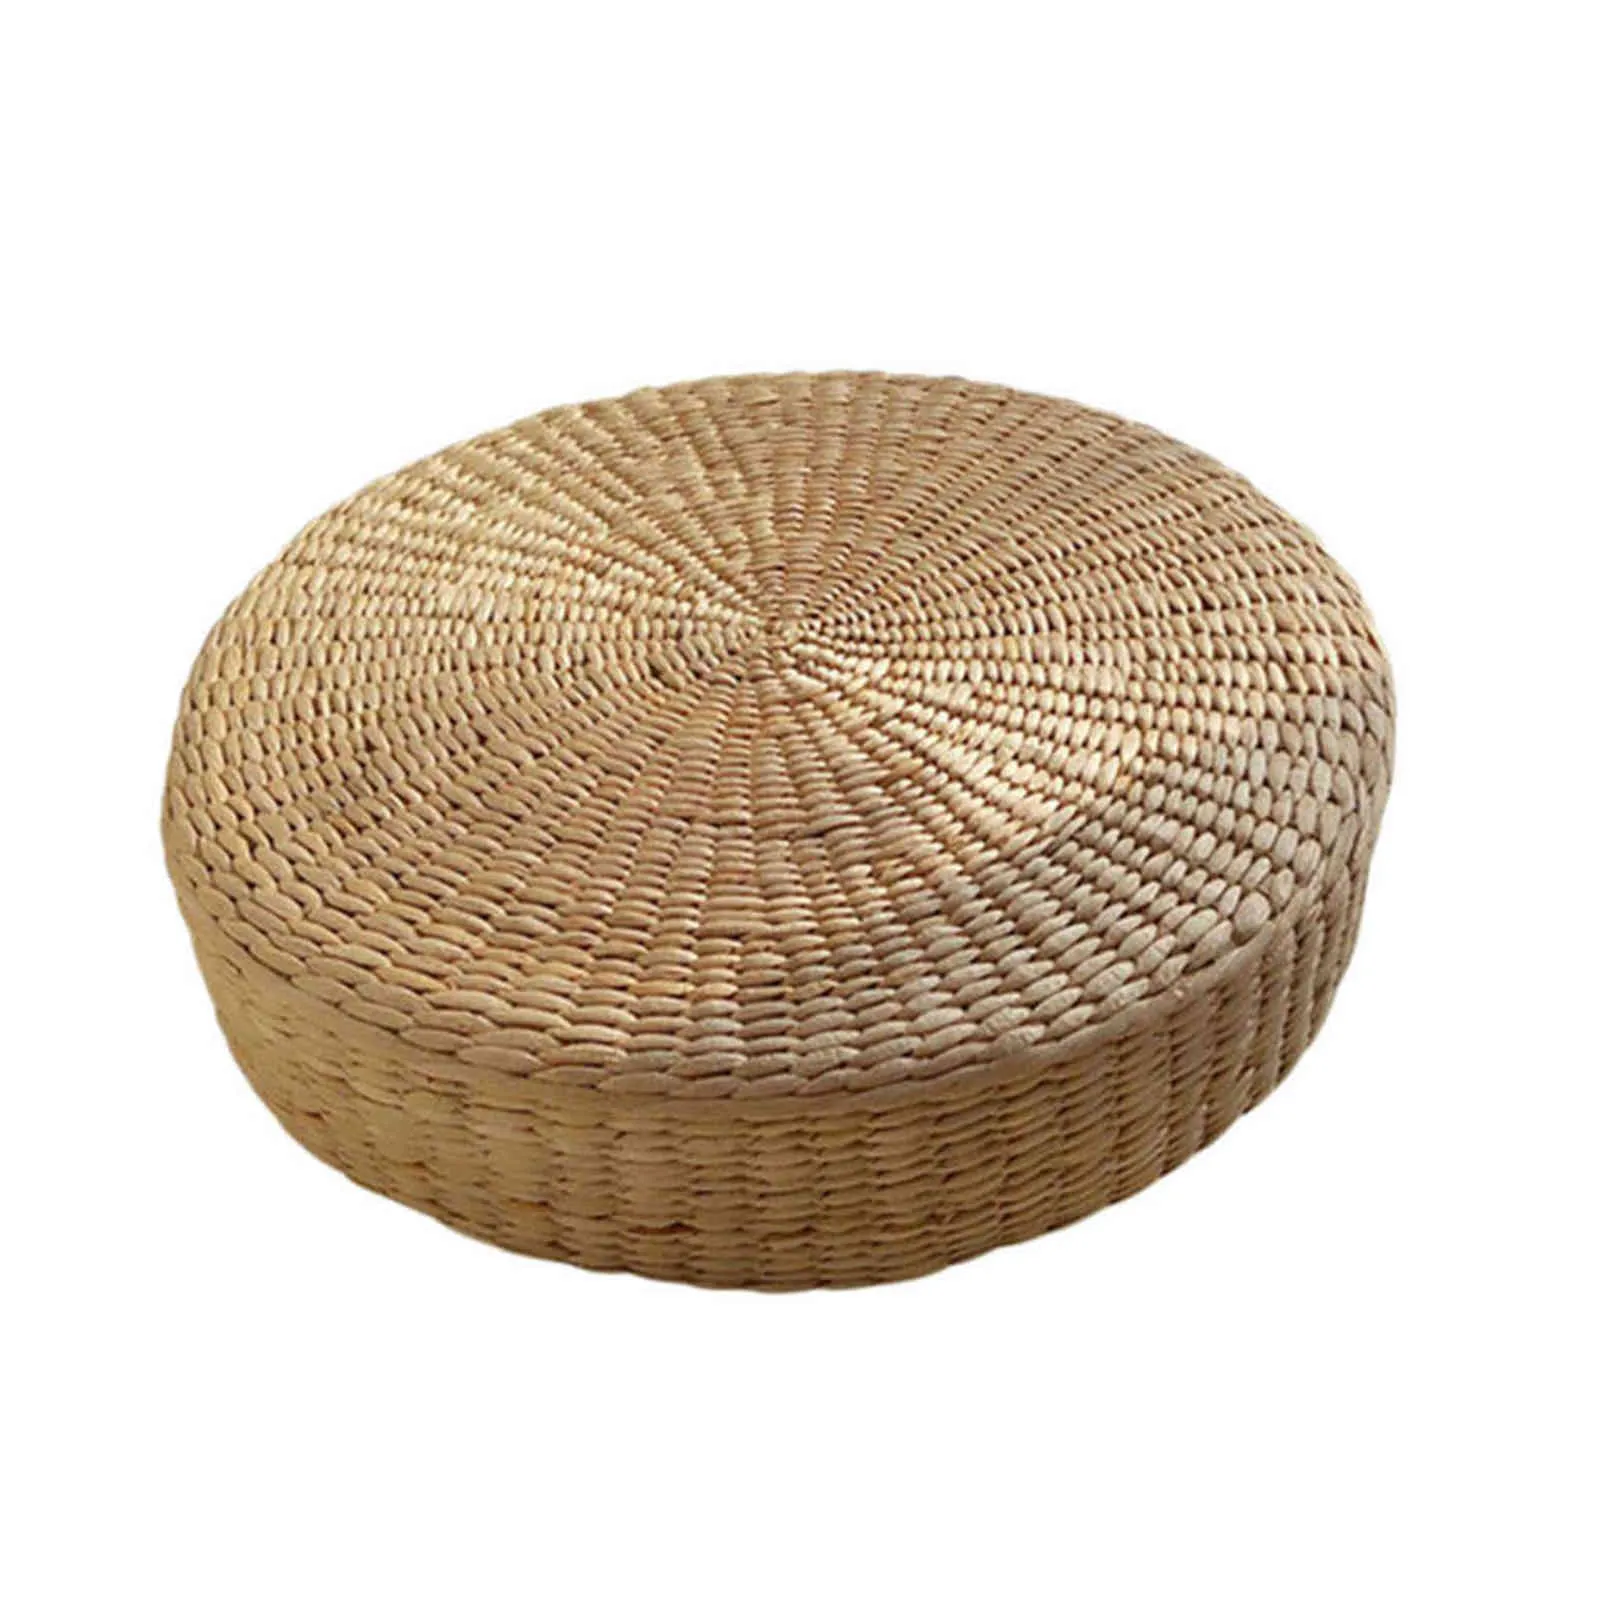 Almofada de chão ecológica redonda, almofada de palha tecida à mão, esteira de tatami, yoga, cerimônia de chá, almofada de meditação 2111102507020